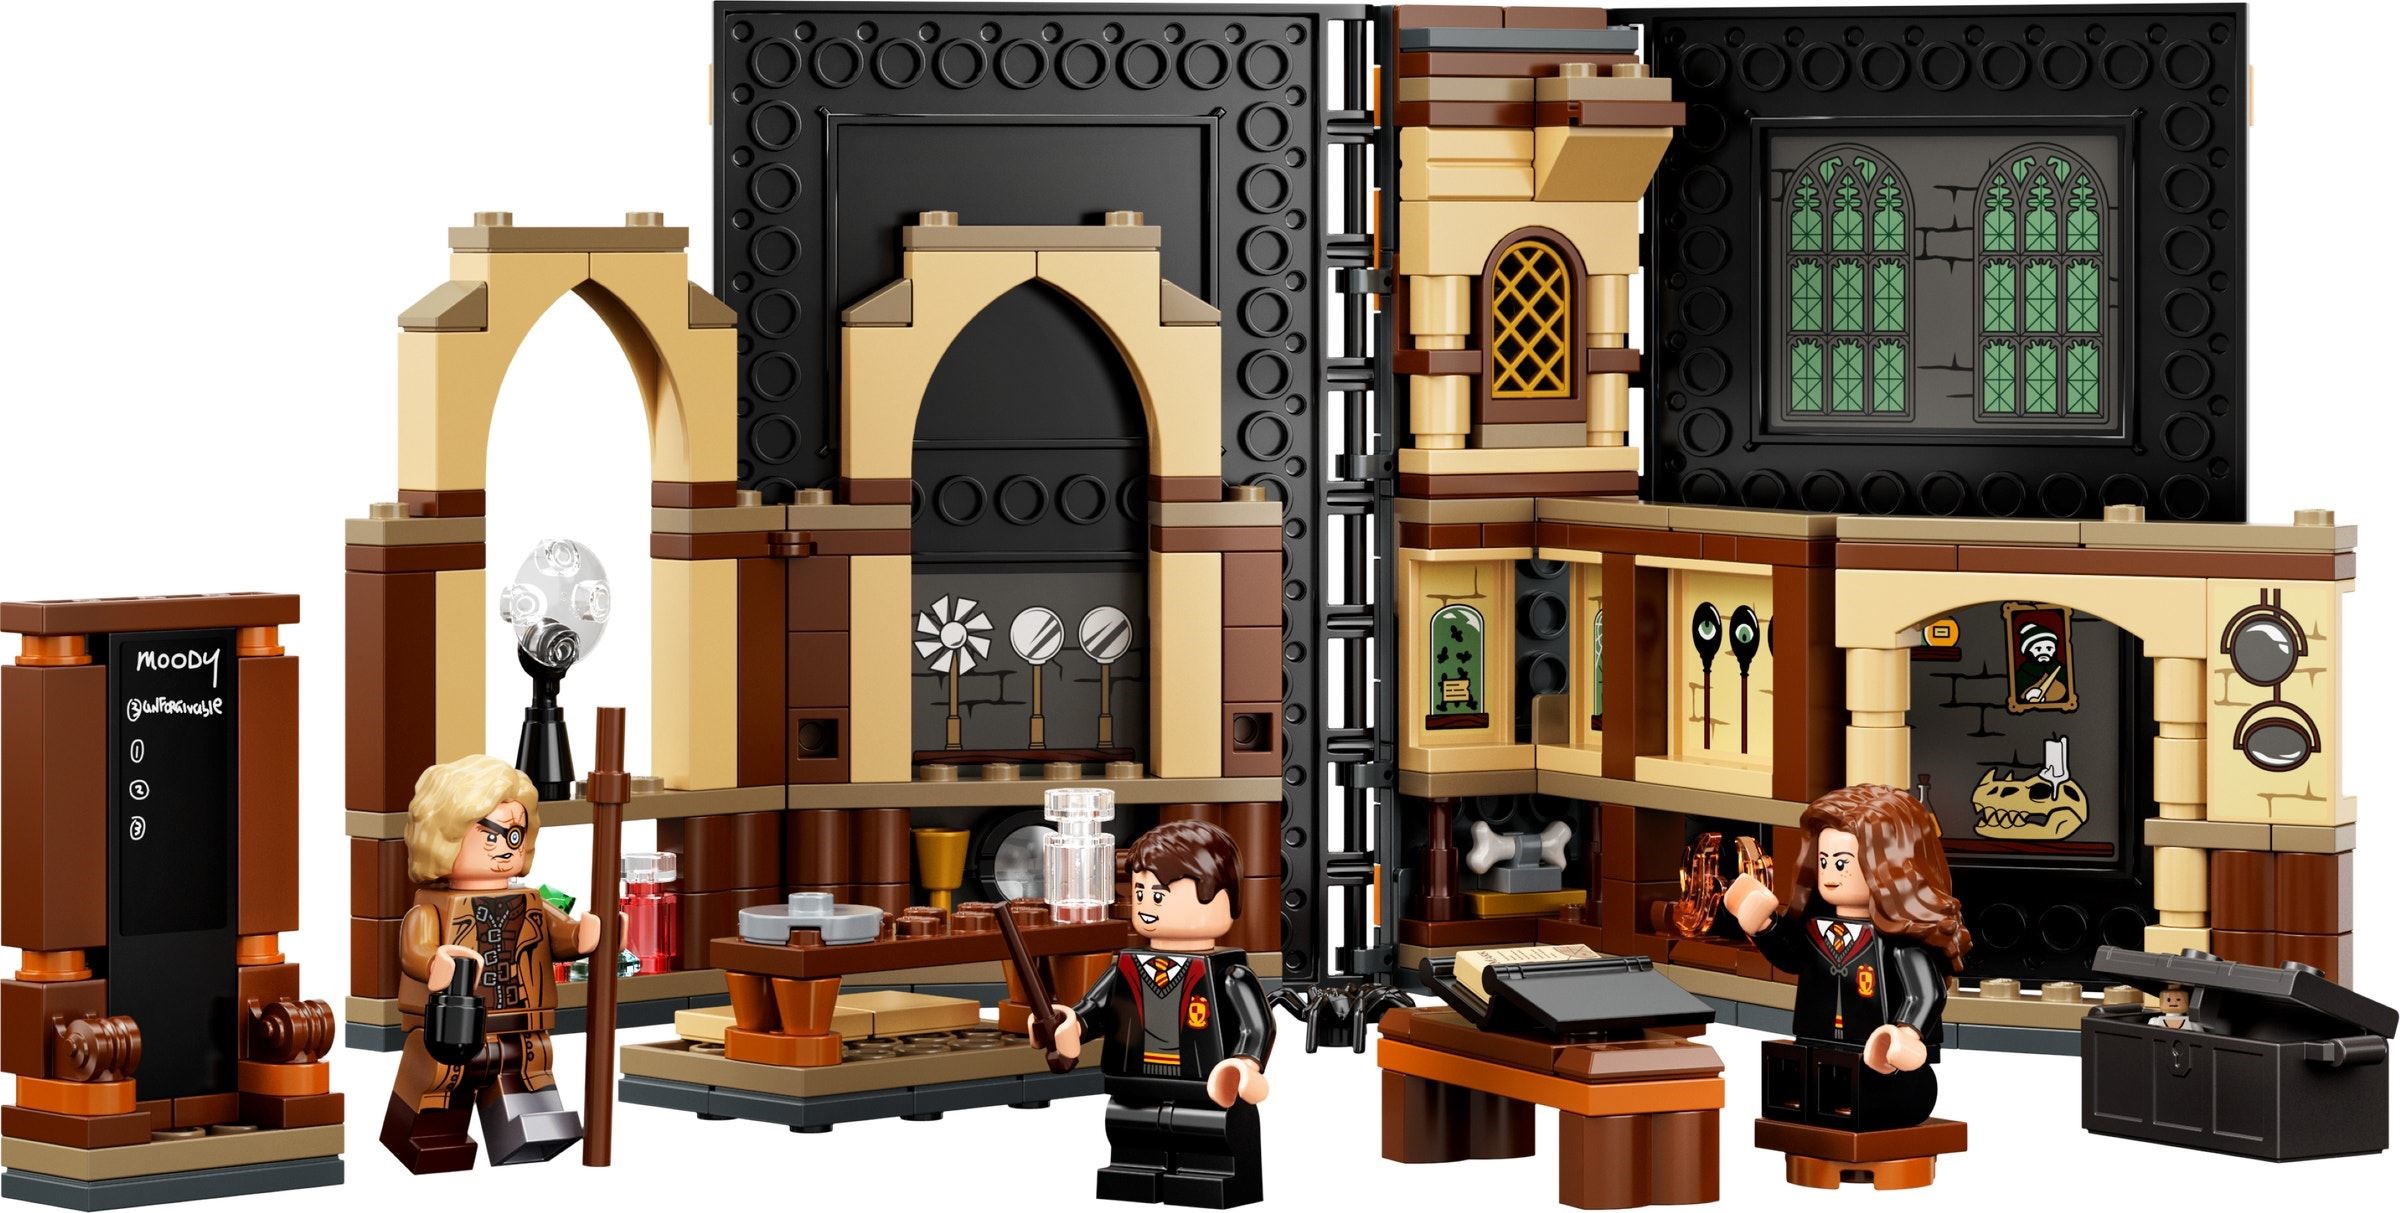 Brickfinder - LEGO Harry Potter Moments Full Details!